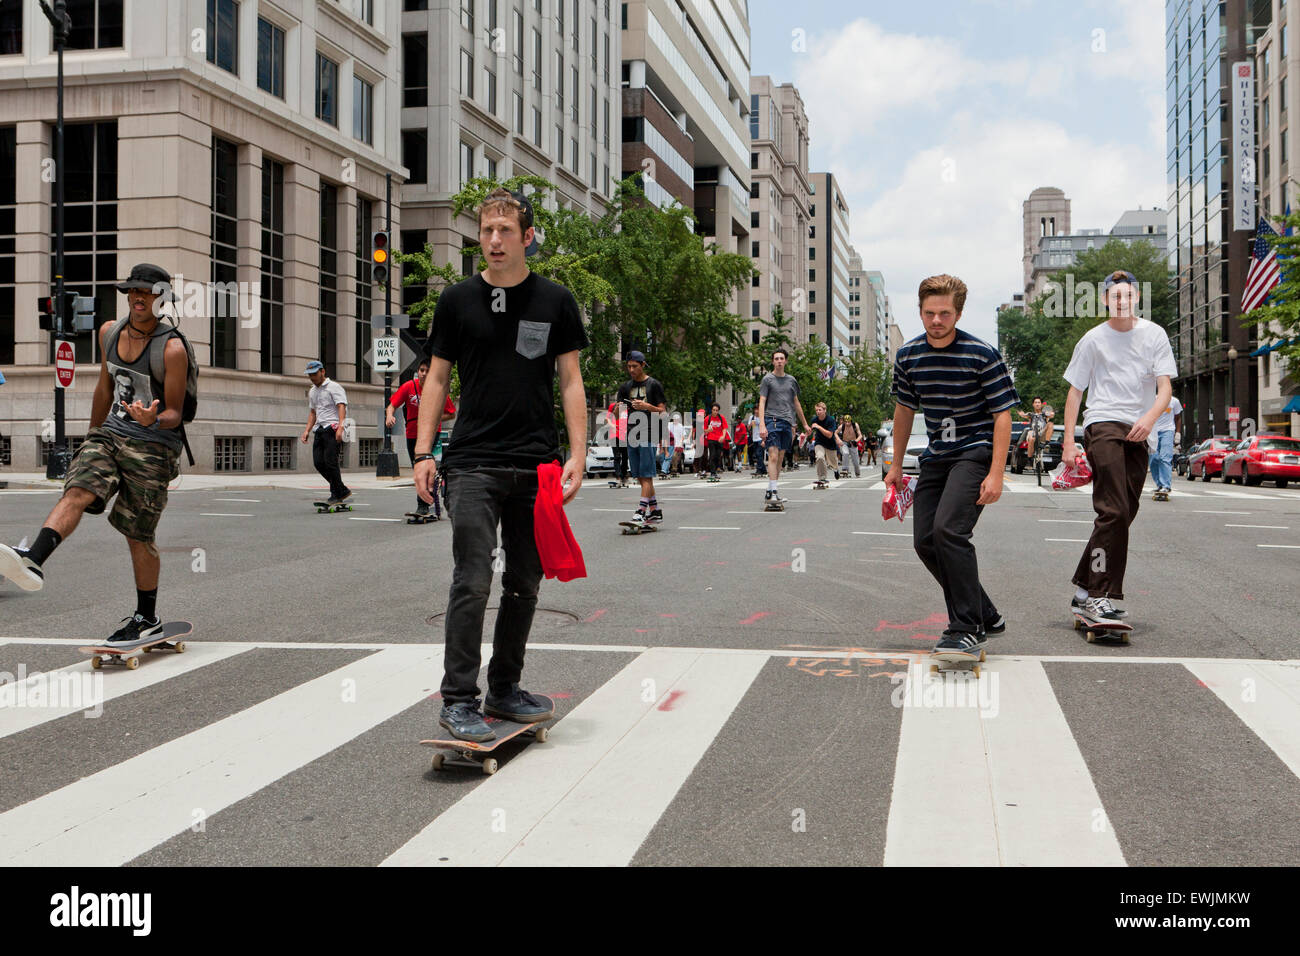 Straße Skateboarder Reiten in Straße - USA Stockfoto